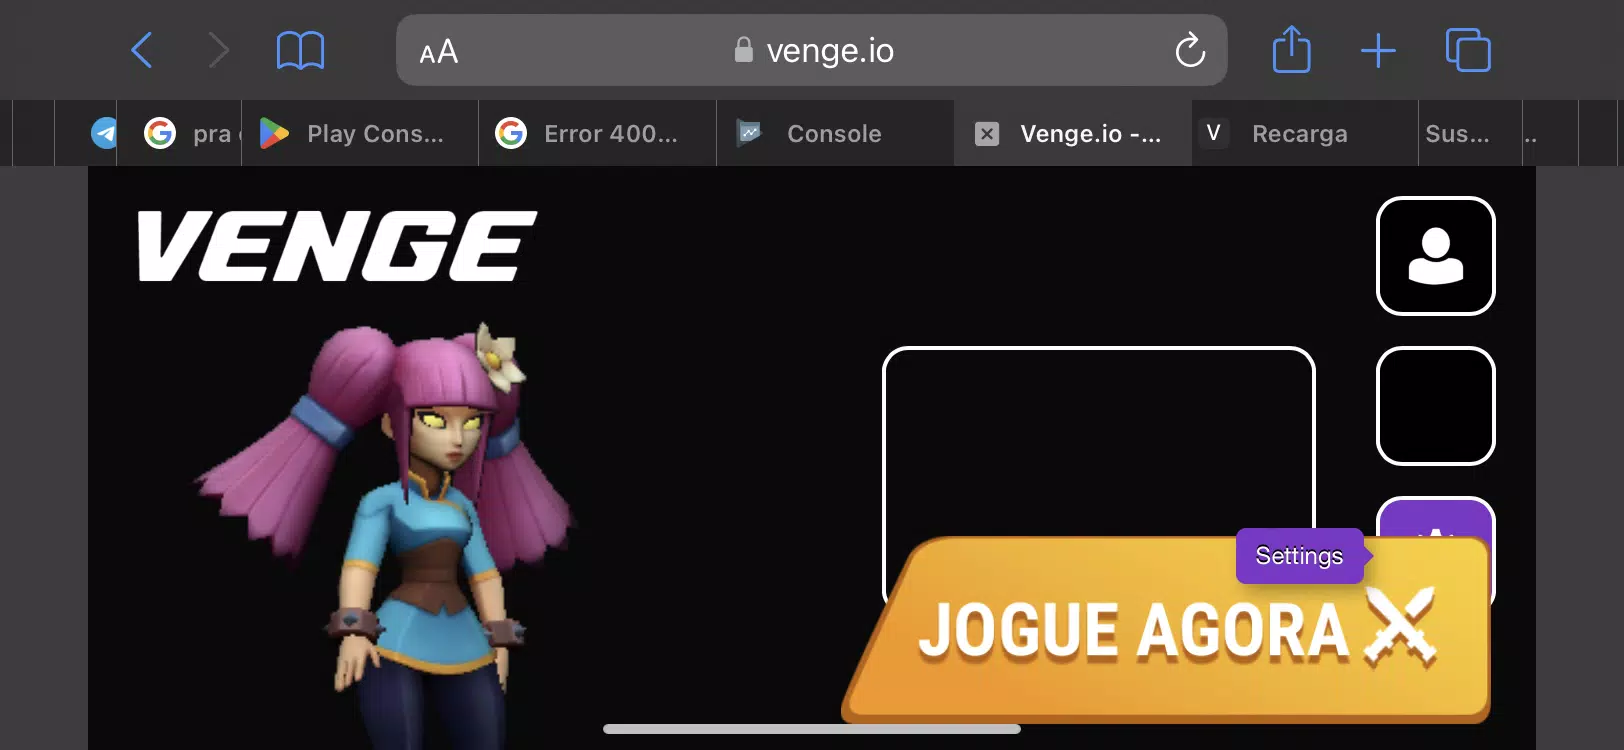 VENGE.IO - Jogue Grátis Online!